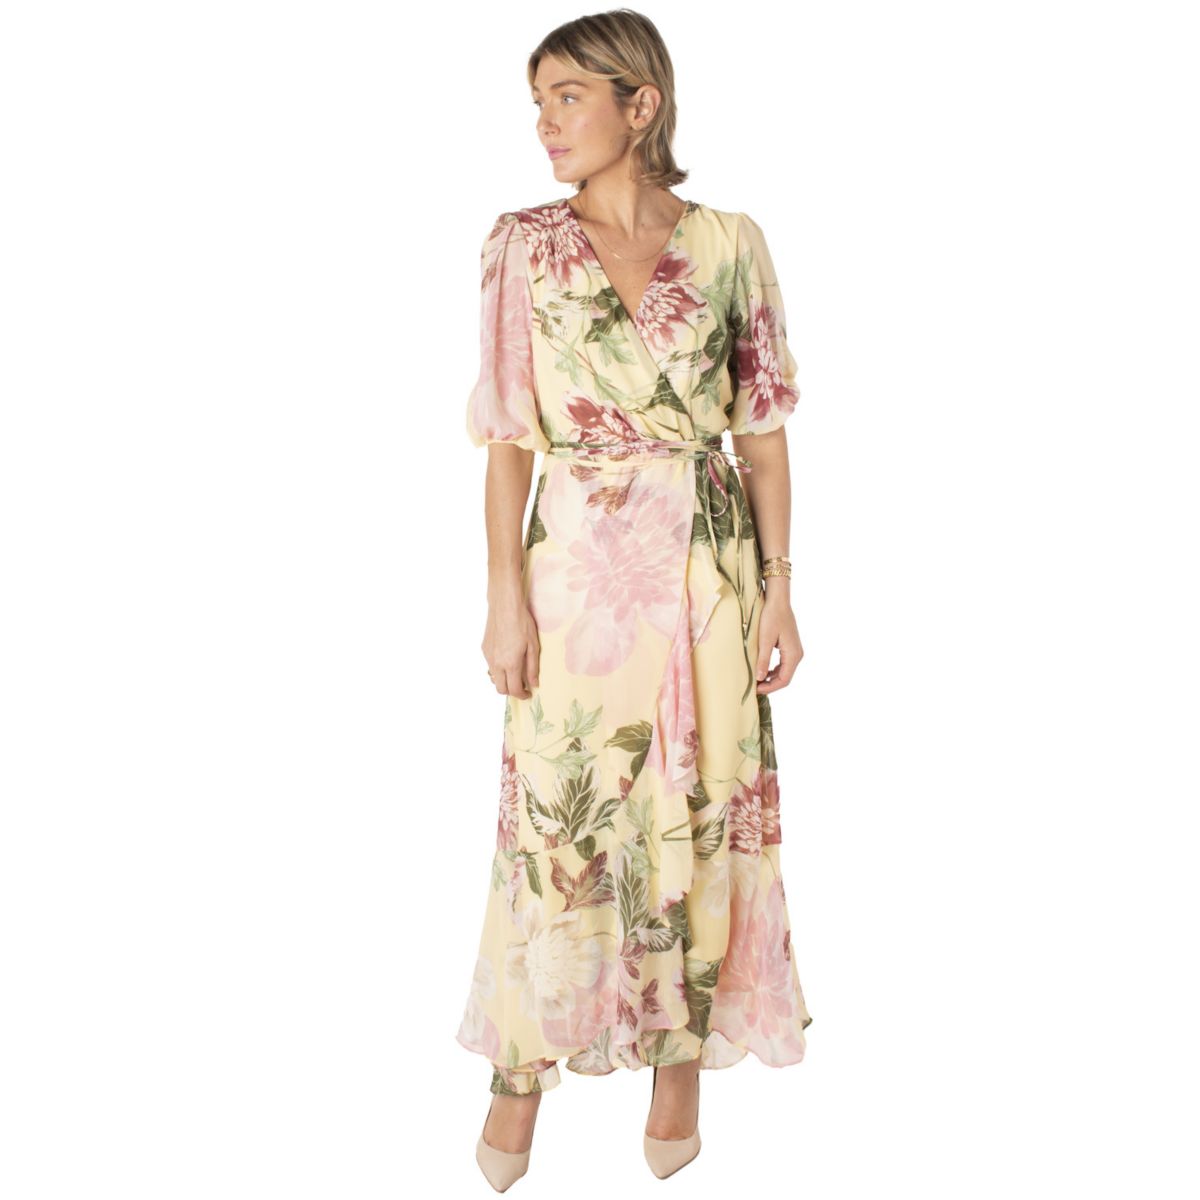 Женское платье макси Maison Tara с цветочным принтом и искусственным запахом MAISON TARA